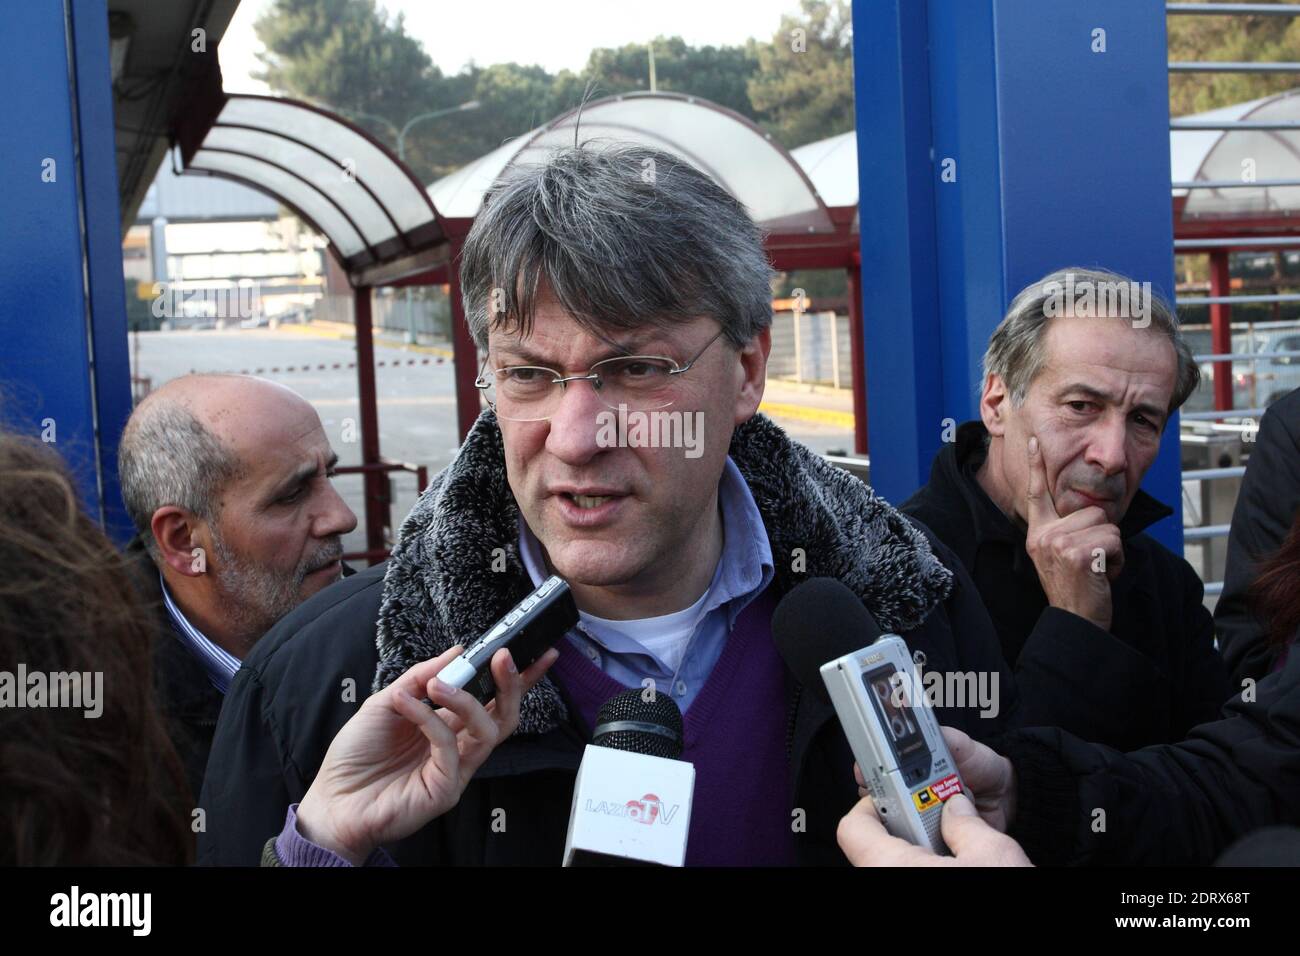 Cassino, Italia - 18 gennaio 2011: Maurizio Landini davanti i cancelli Fiat FCA Foto de stock